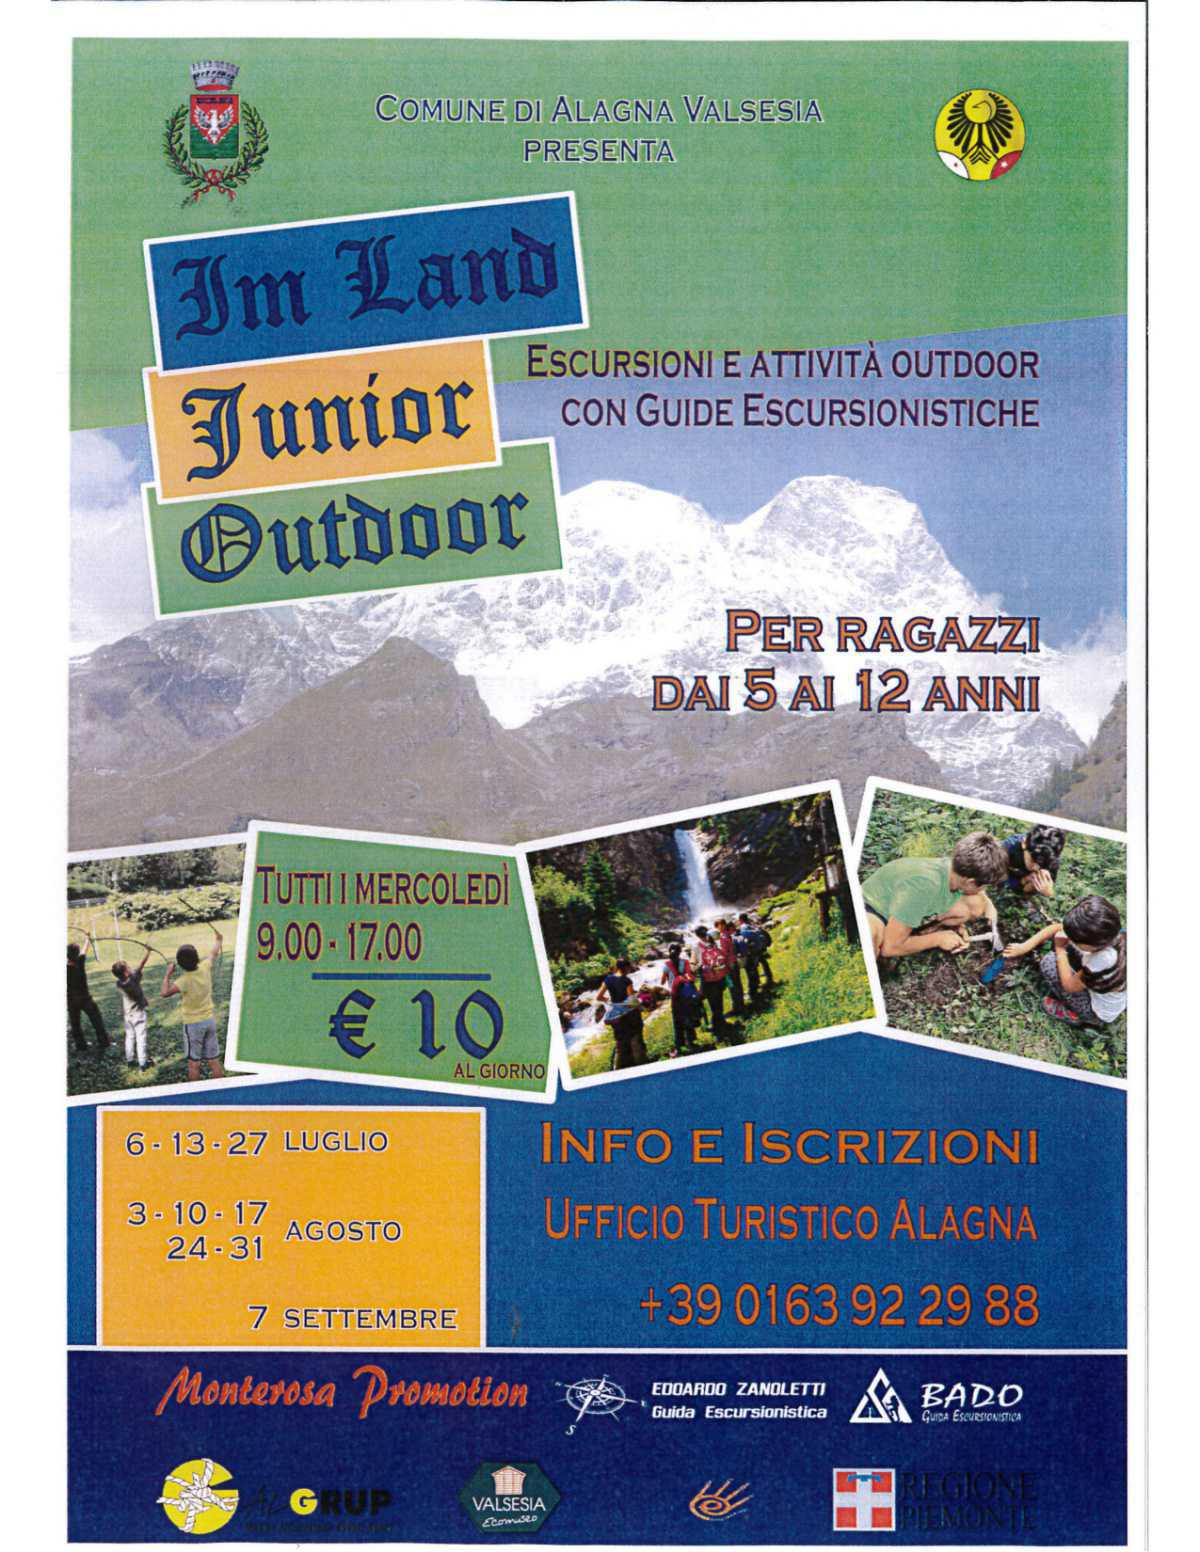 Im Land Junior Camp - Alagna Valsesia